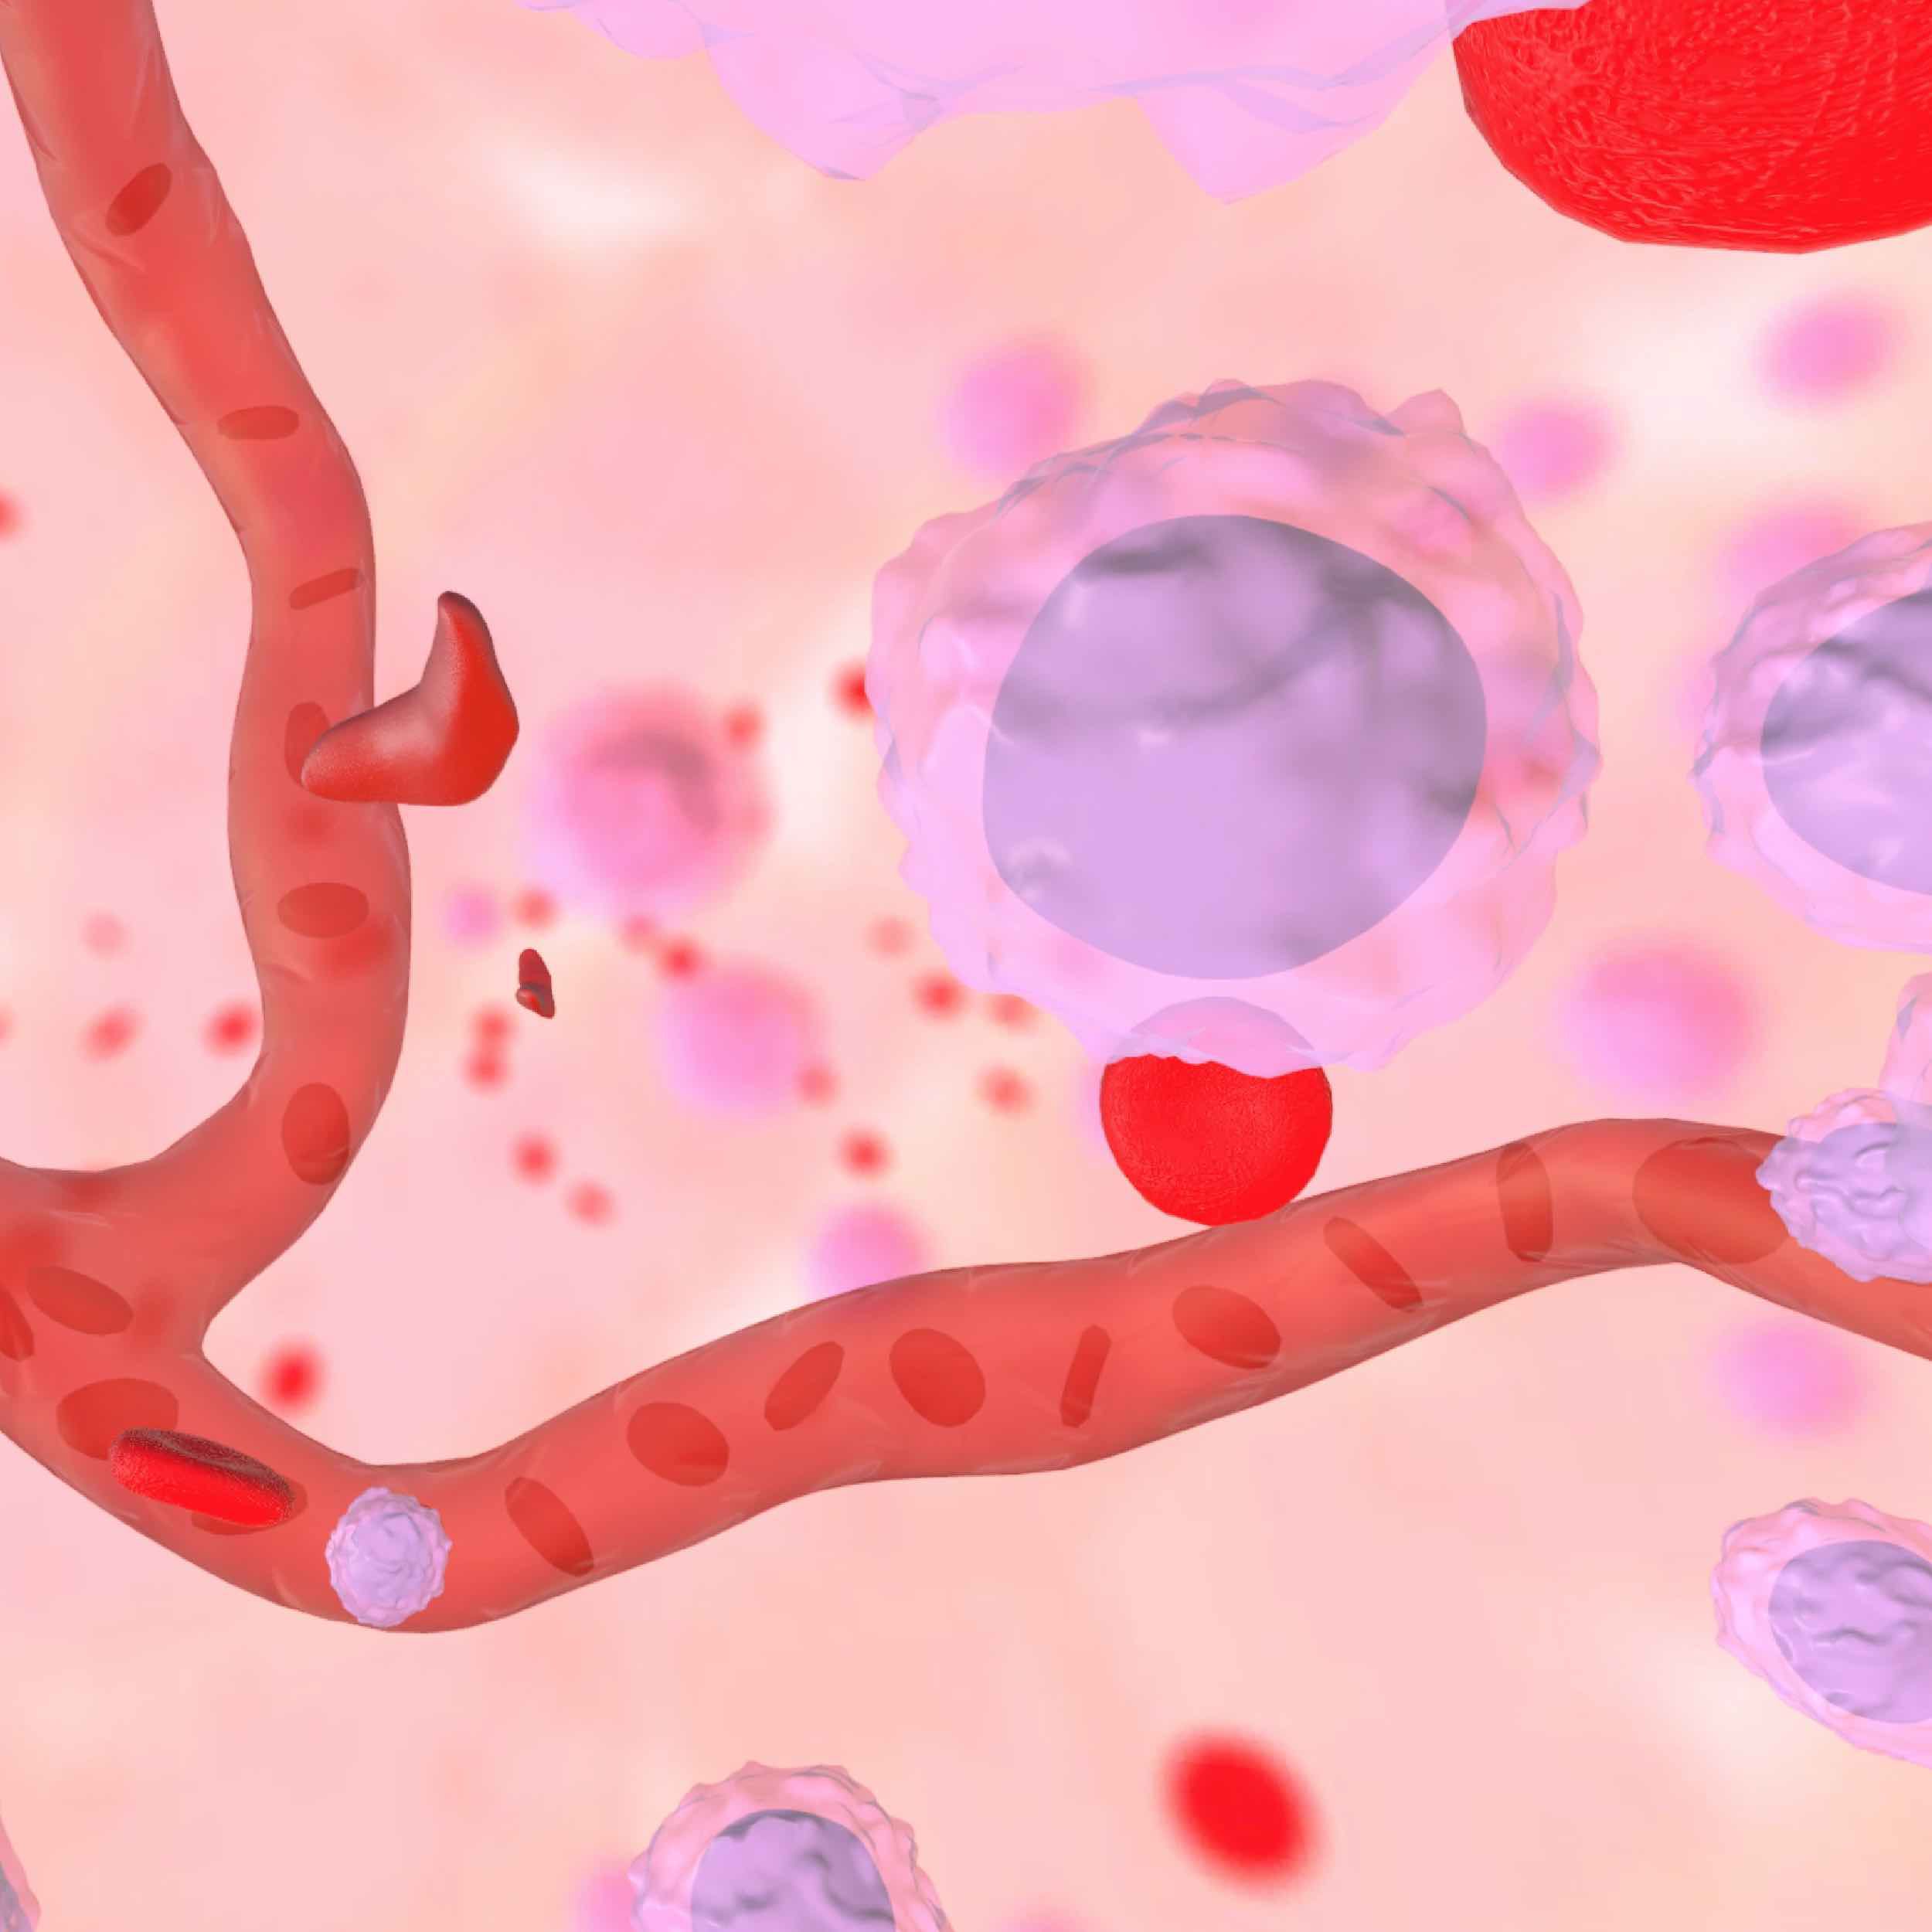 骨髓内部的图形表示，显示红细胞、干细胞和毛细血管